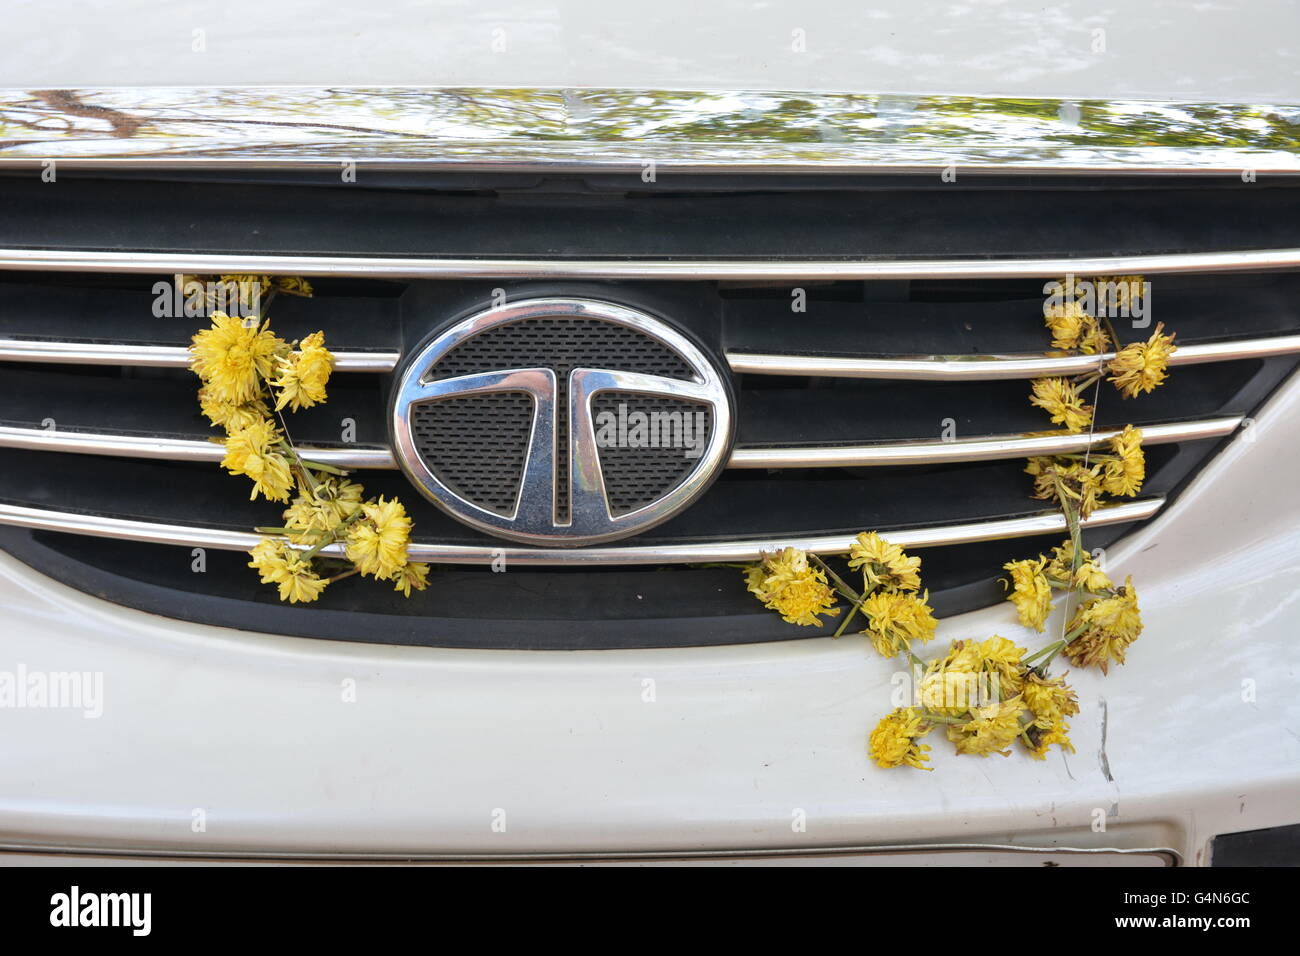 Kochi, Indien - 24. Oktober 2015 - Blumen auf Tata Auto in Indien im Rahmen des Aberglaubens, Autounfälle zu verhindern Stockfoto